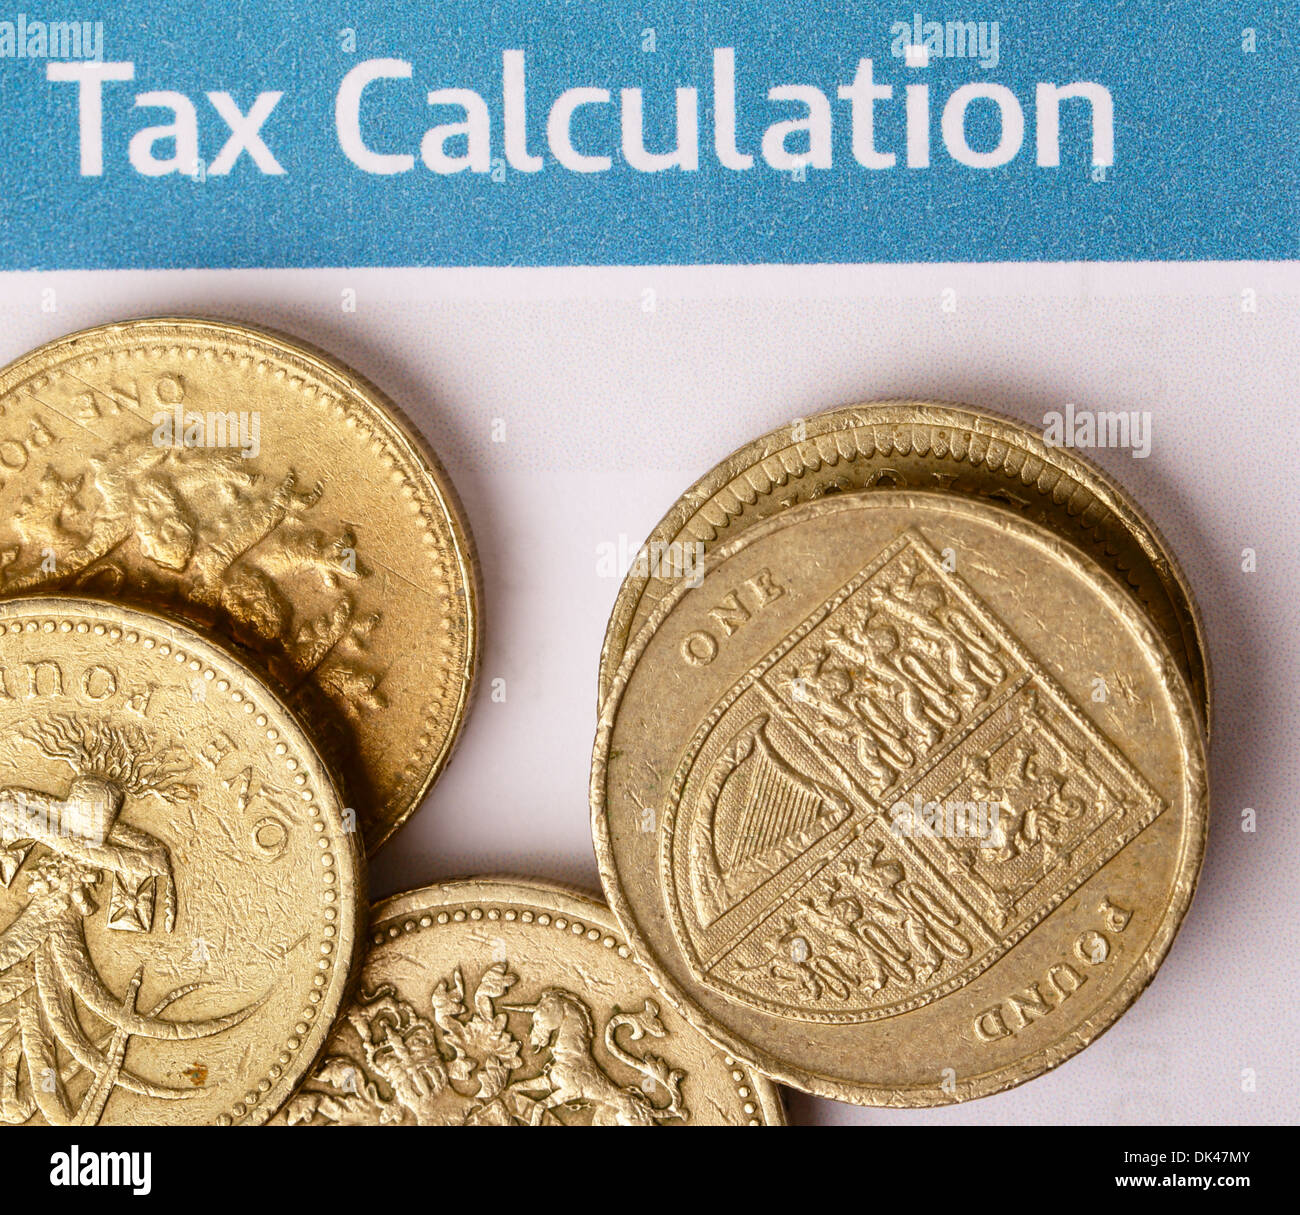 Ein Haufen britische Pfund-Münzen zeigen die Waliser Lauch und das Wappen des Vereinigten Königreichs auf eine britische Steuerformular Büro. Stockfoto